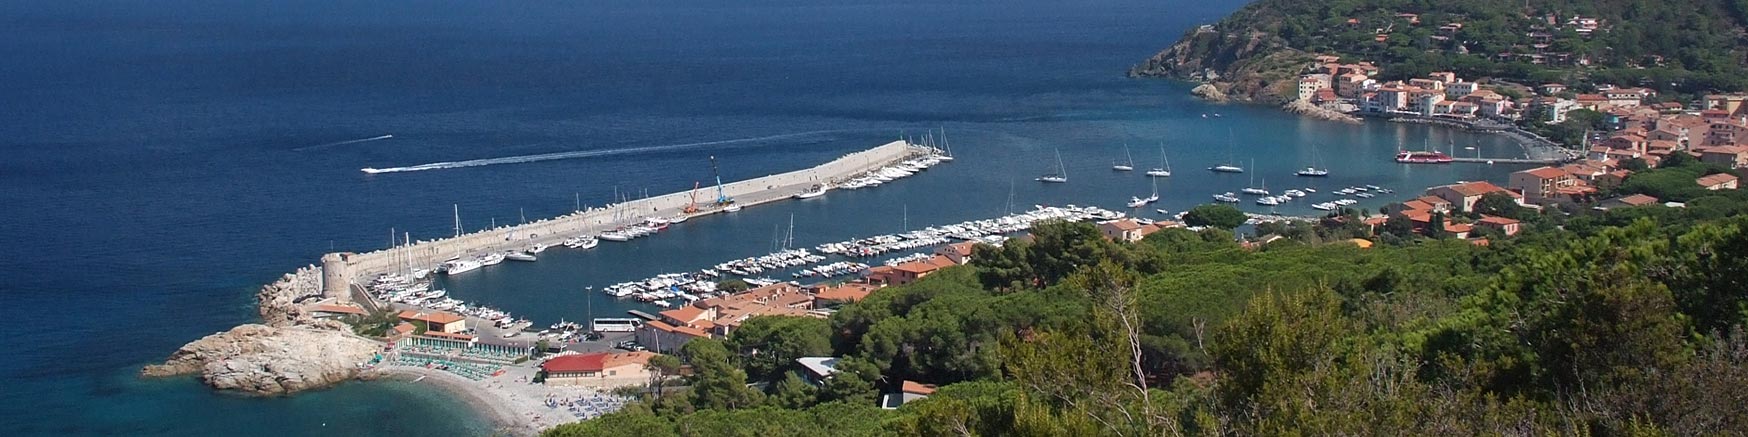 Marciana Marina, Isola d'Elba